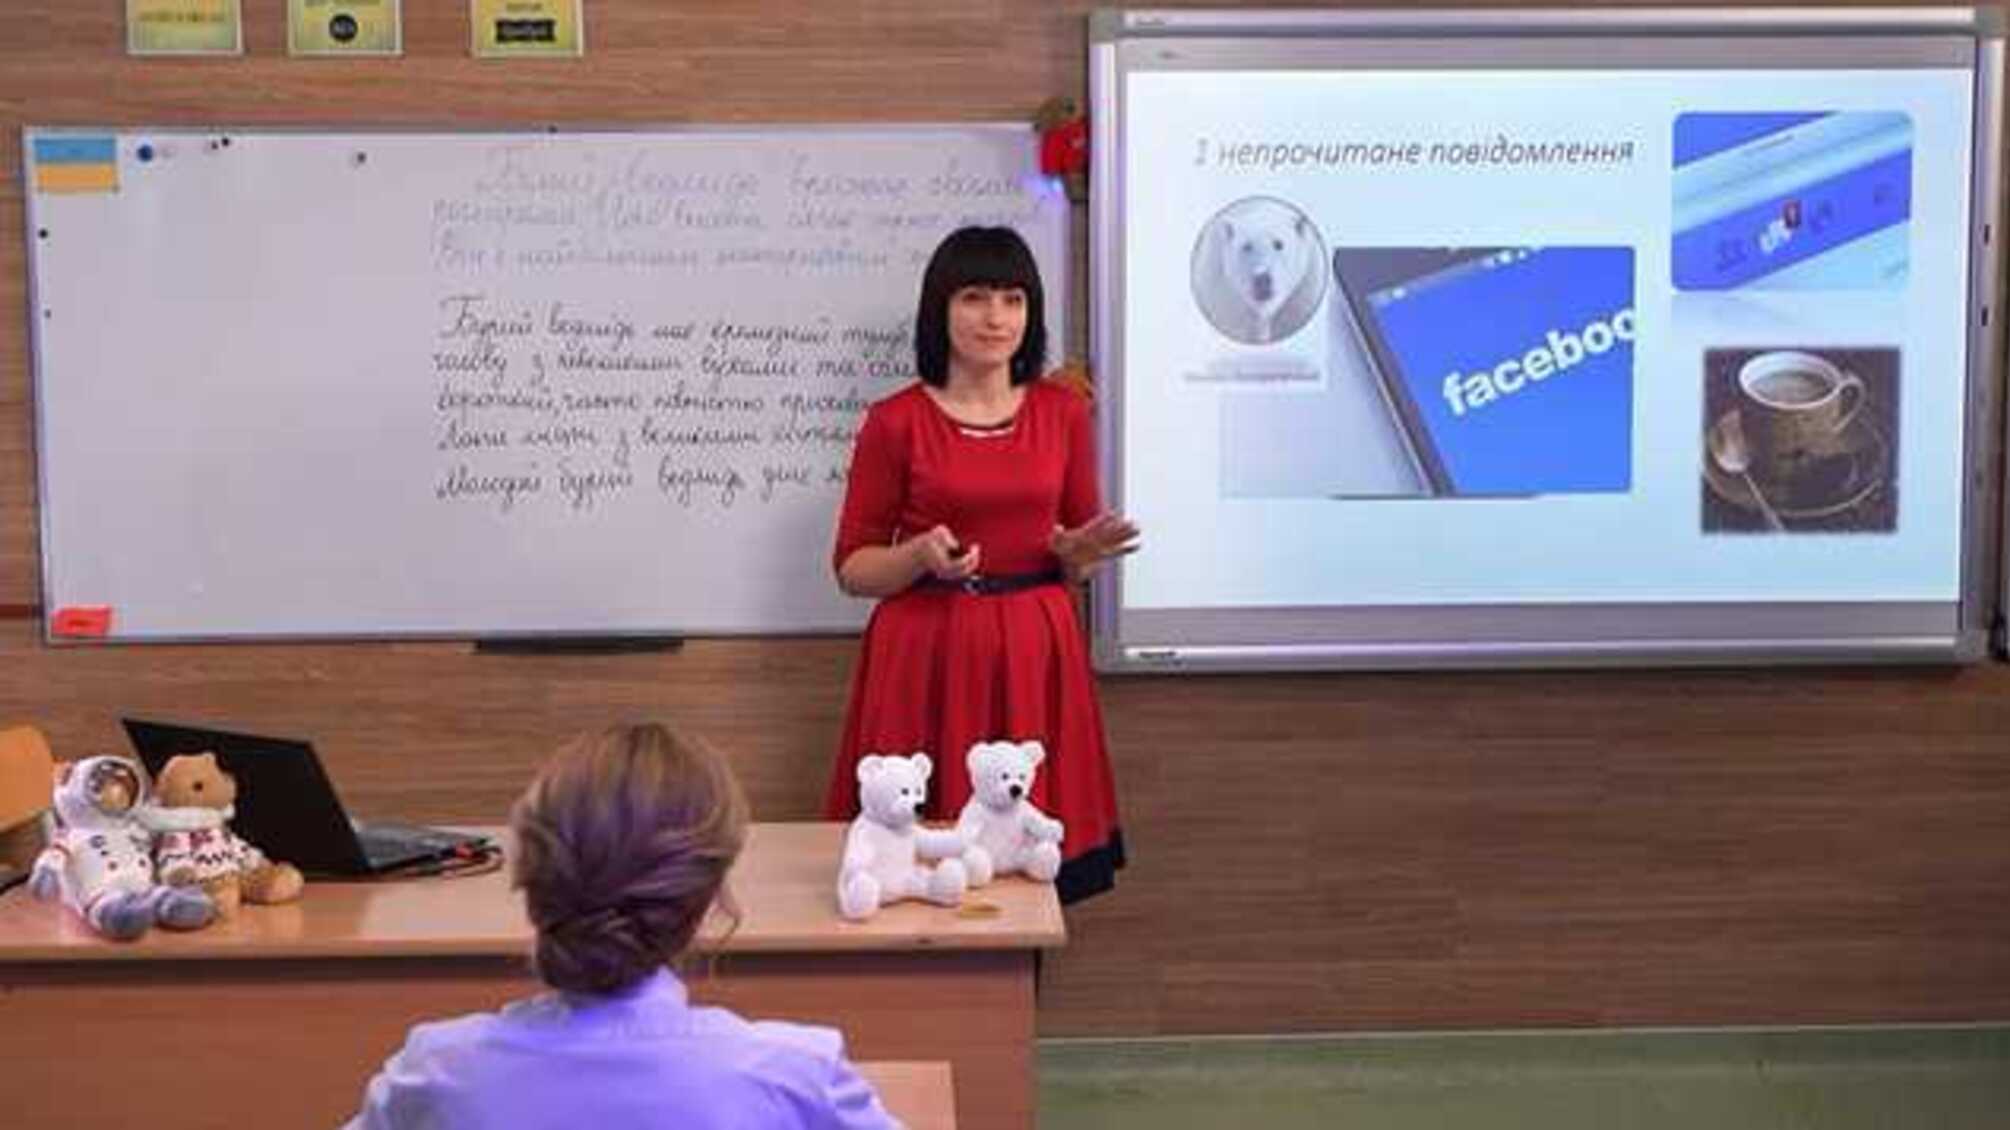 Учитель украинского языка Всеукраинской онлайн-школы переселила белого медведя в Антарктиду: очередной провал